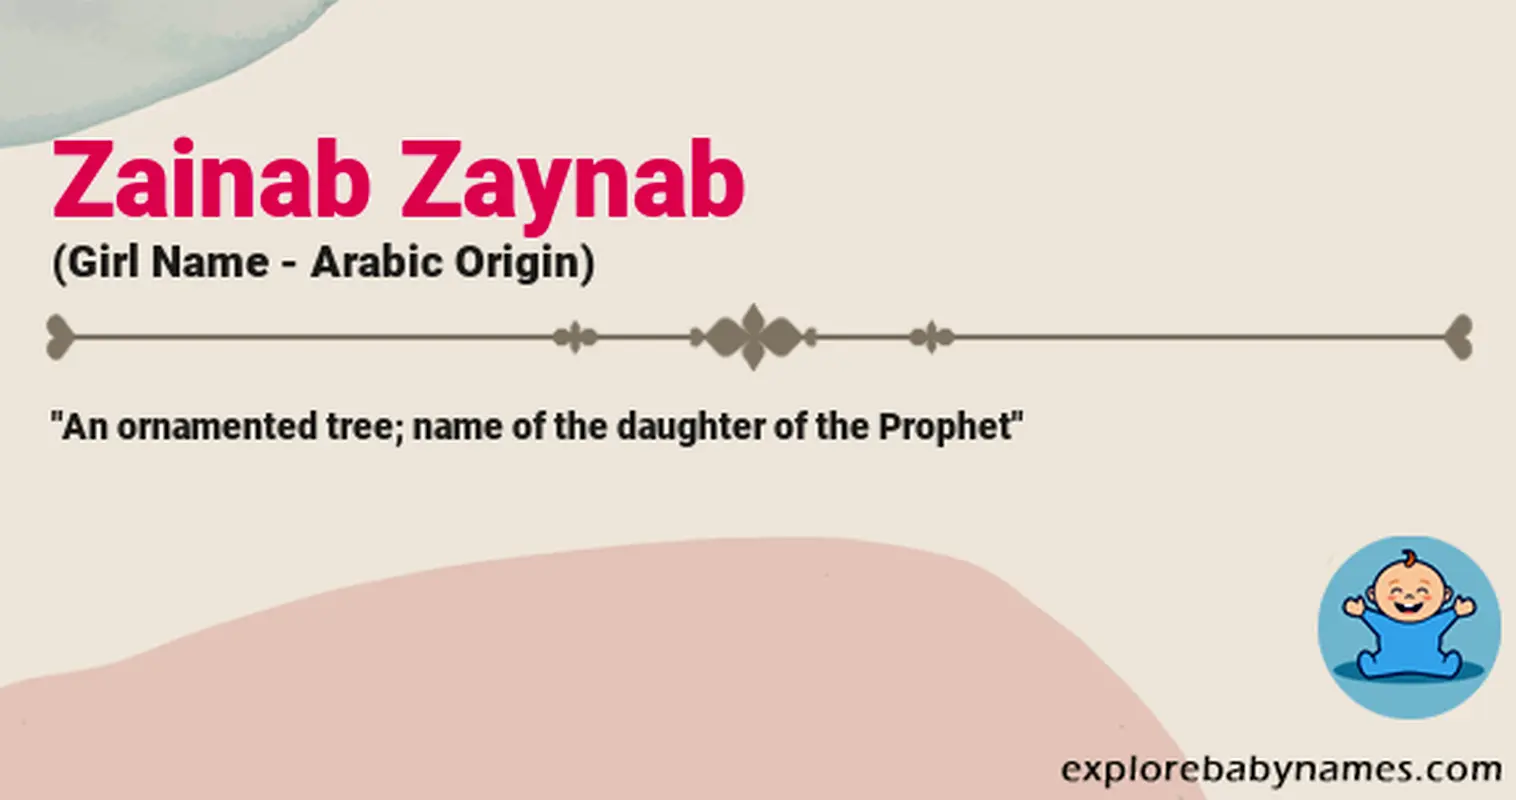 Meaning of Zainab Zaynab